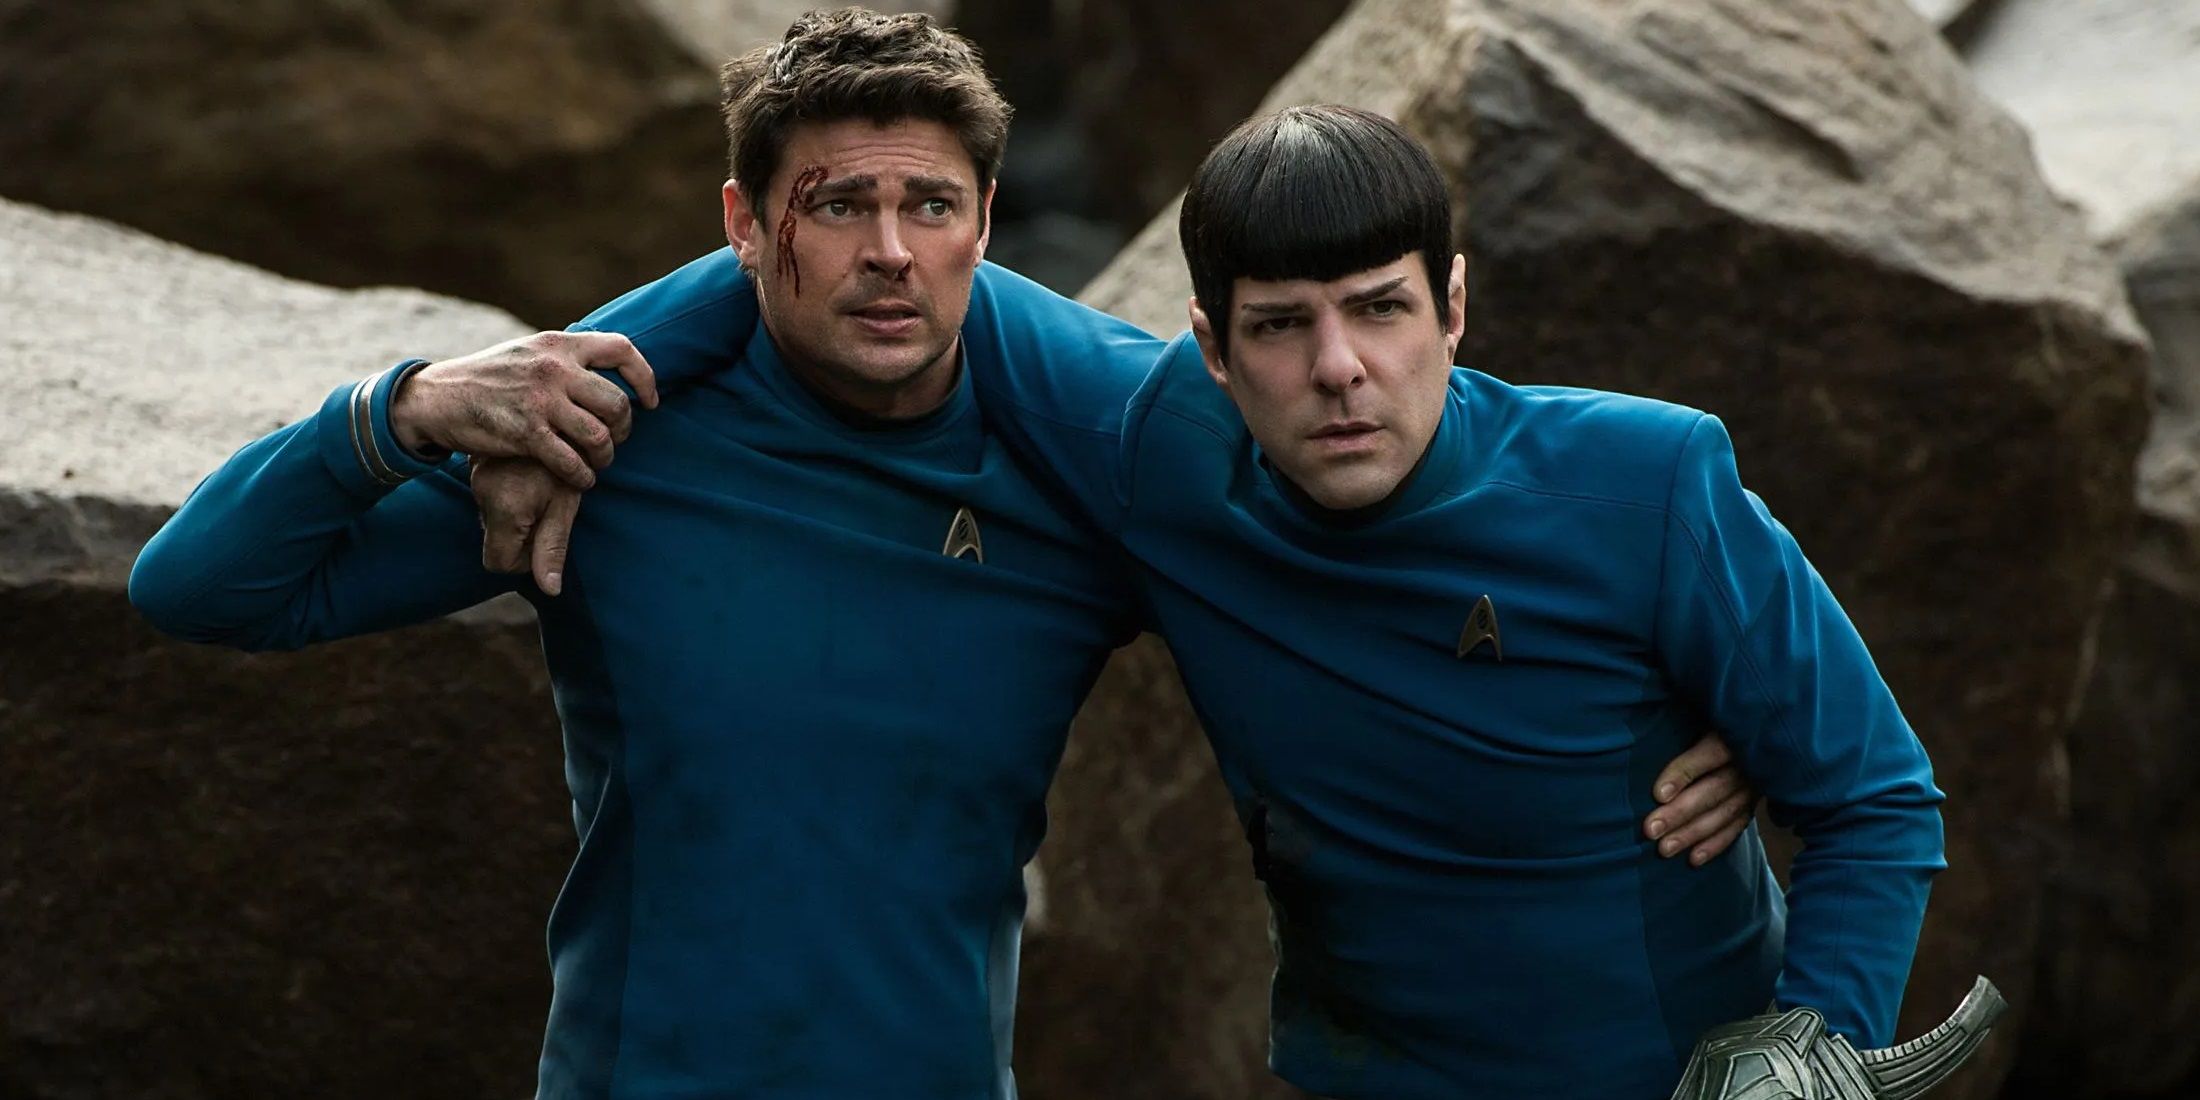 Bones carries an injured Spock in Star Trek Beyond